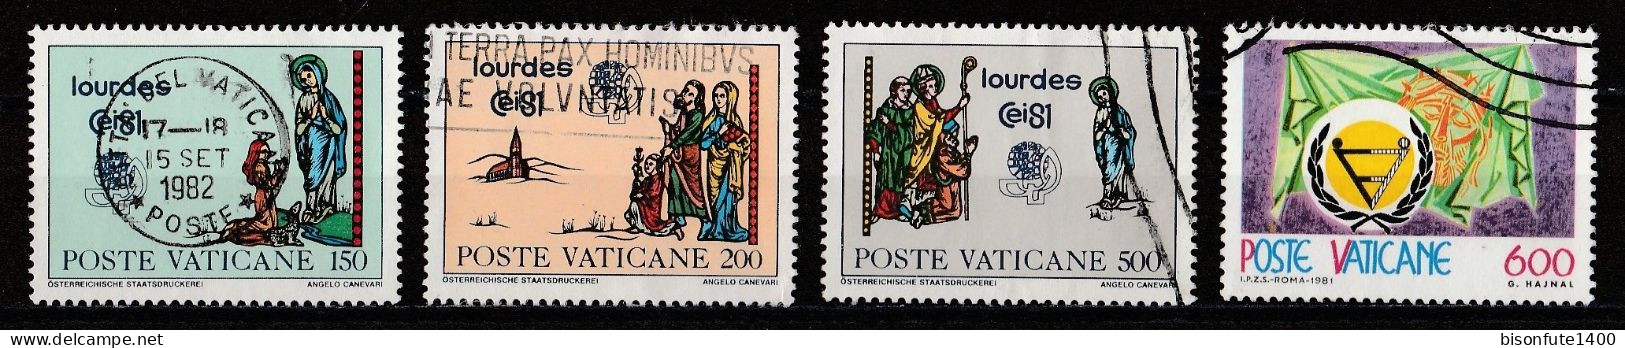 Vatican 1981 : Timbres Yvert & Tellier N° 702 - 703 - 704 - 708 - 709 - 710 - 711 - 712 - 713 Et 714 Oblitérés - Oblitérés